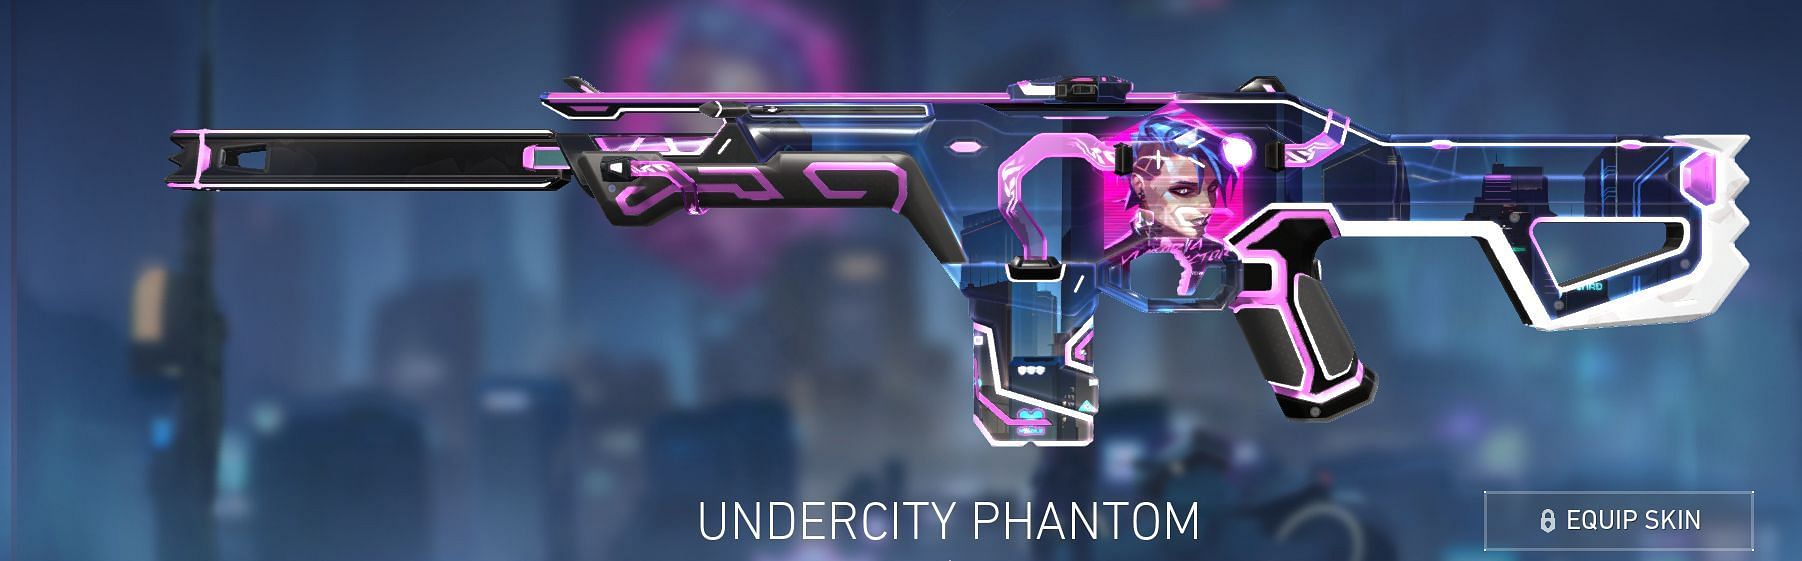 Undercity Phantom (Image via Riot Games)